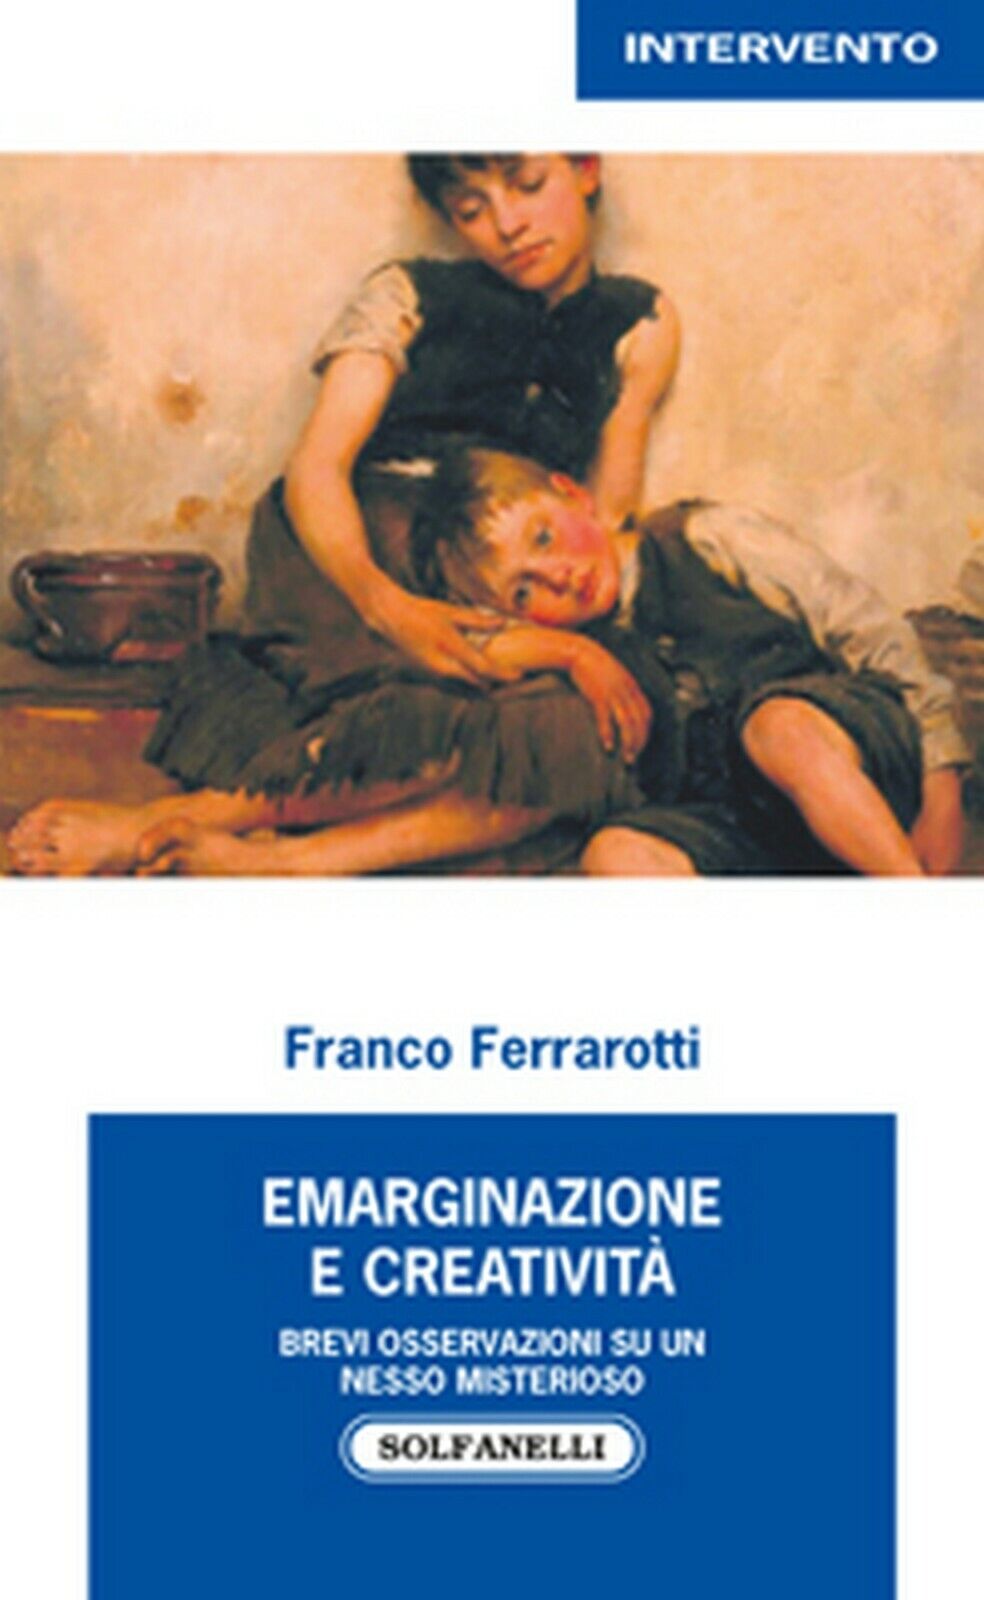 EMARGINAZIONE E CREATIVIT?  di Franco Ferrarotti,  Solfanelli Edizioni